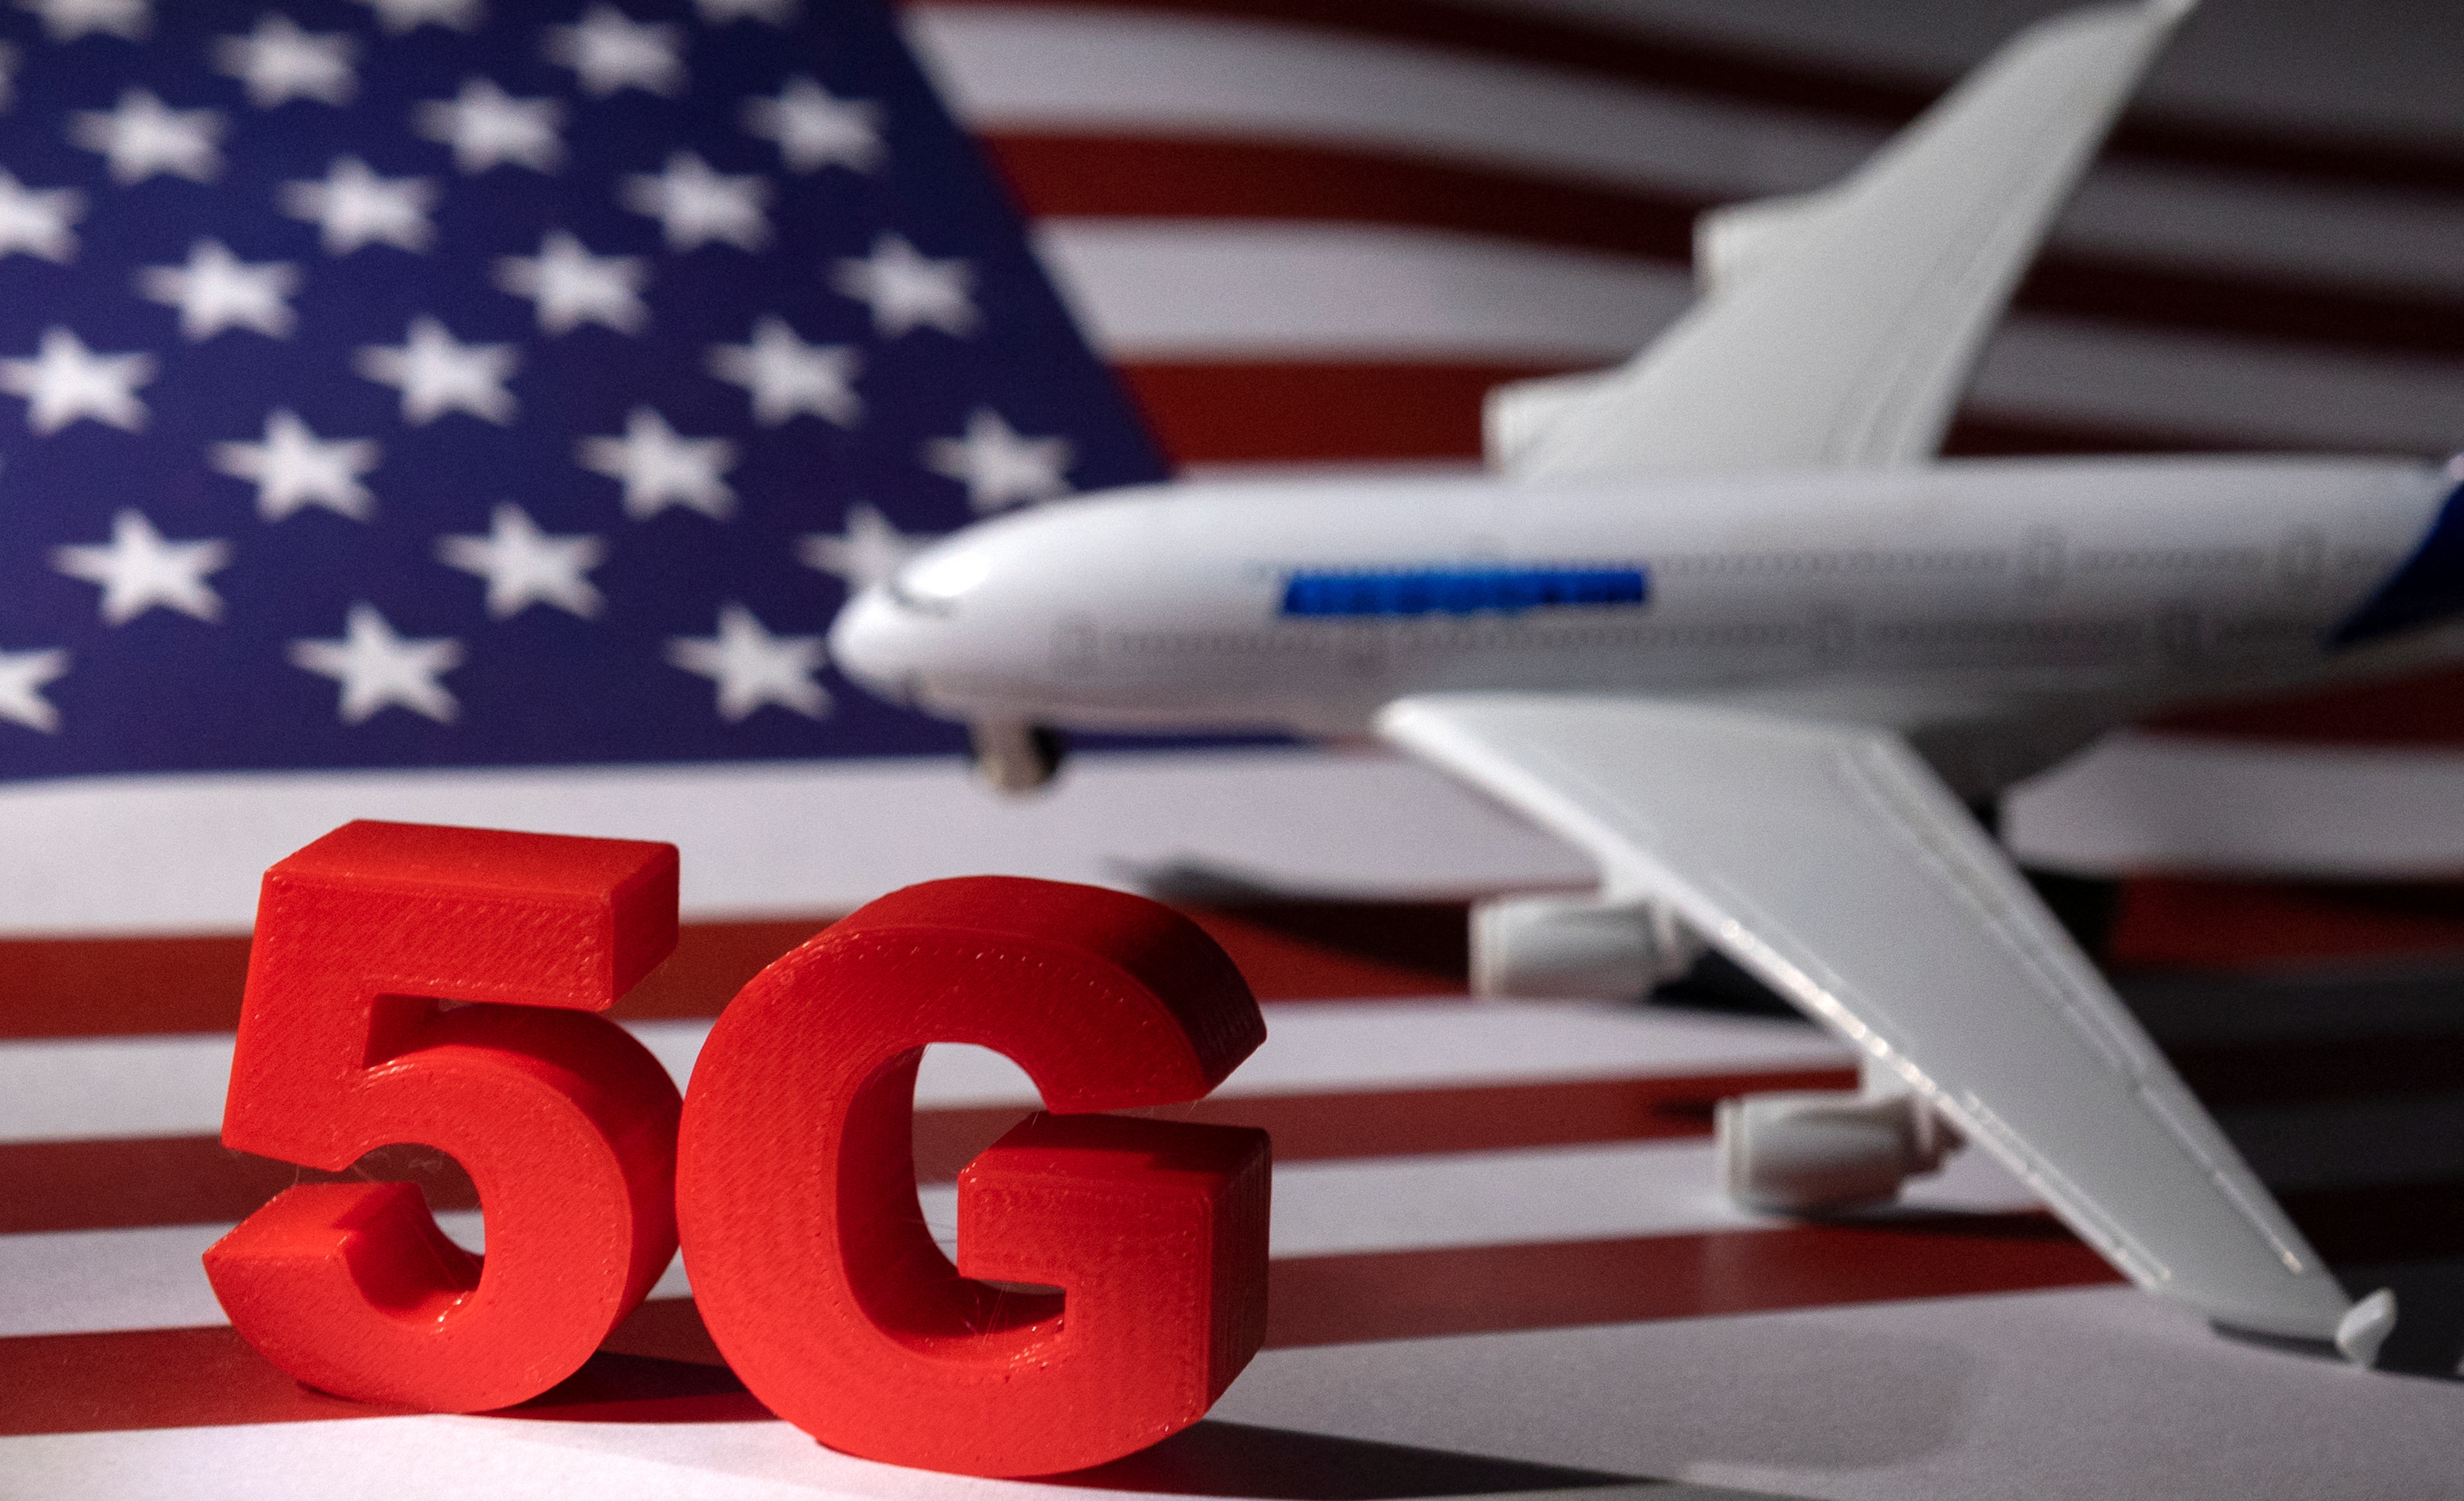 El 5G parece ser un problema para aeronaves en Estados Unidos (Foto: REUTERS/Dado Ruvic/Illustration)